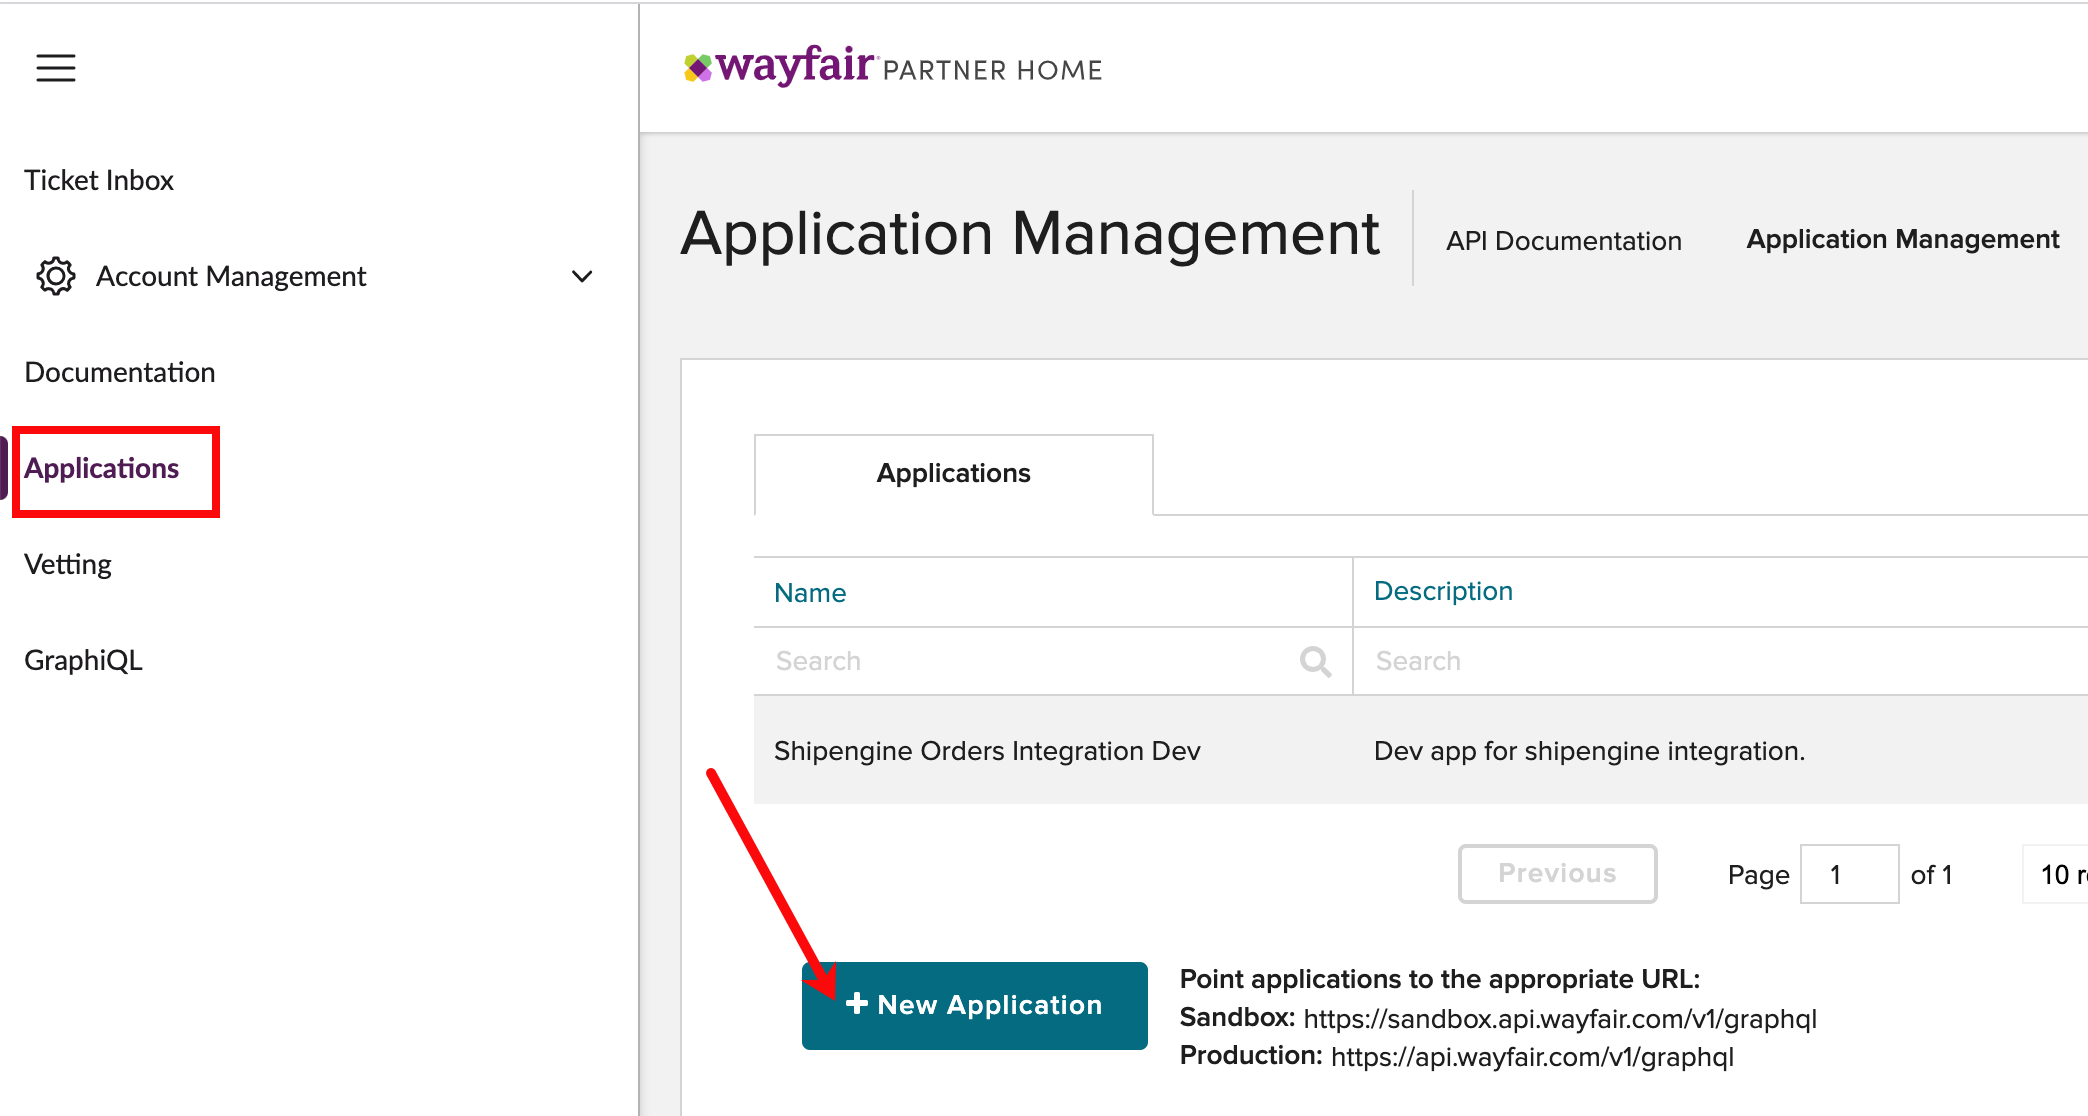 Wayfair_Applications_New_Application_MRK.png